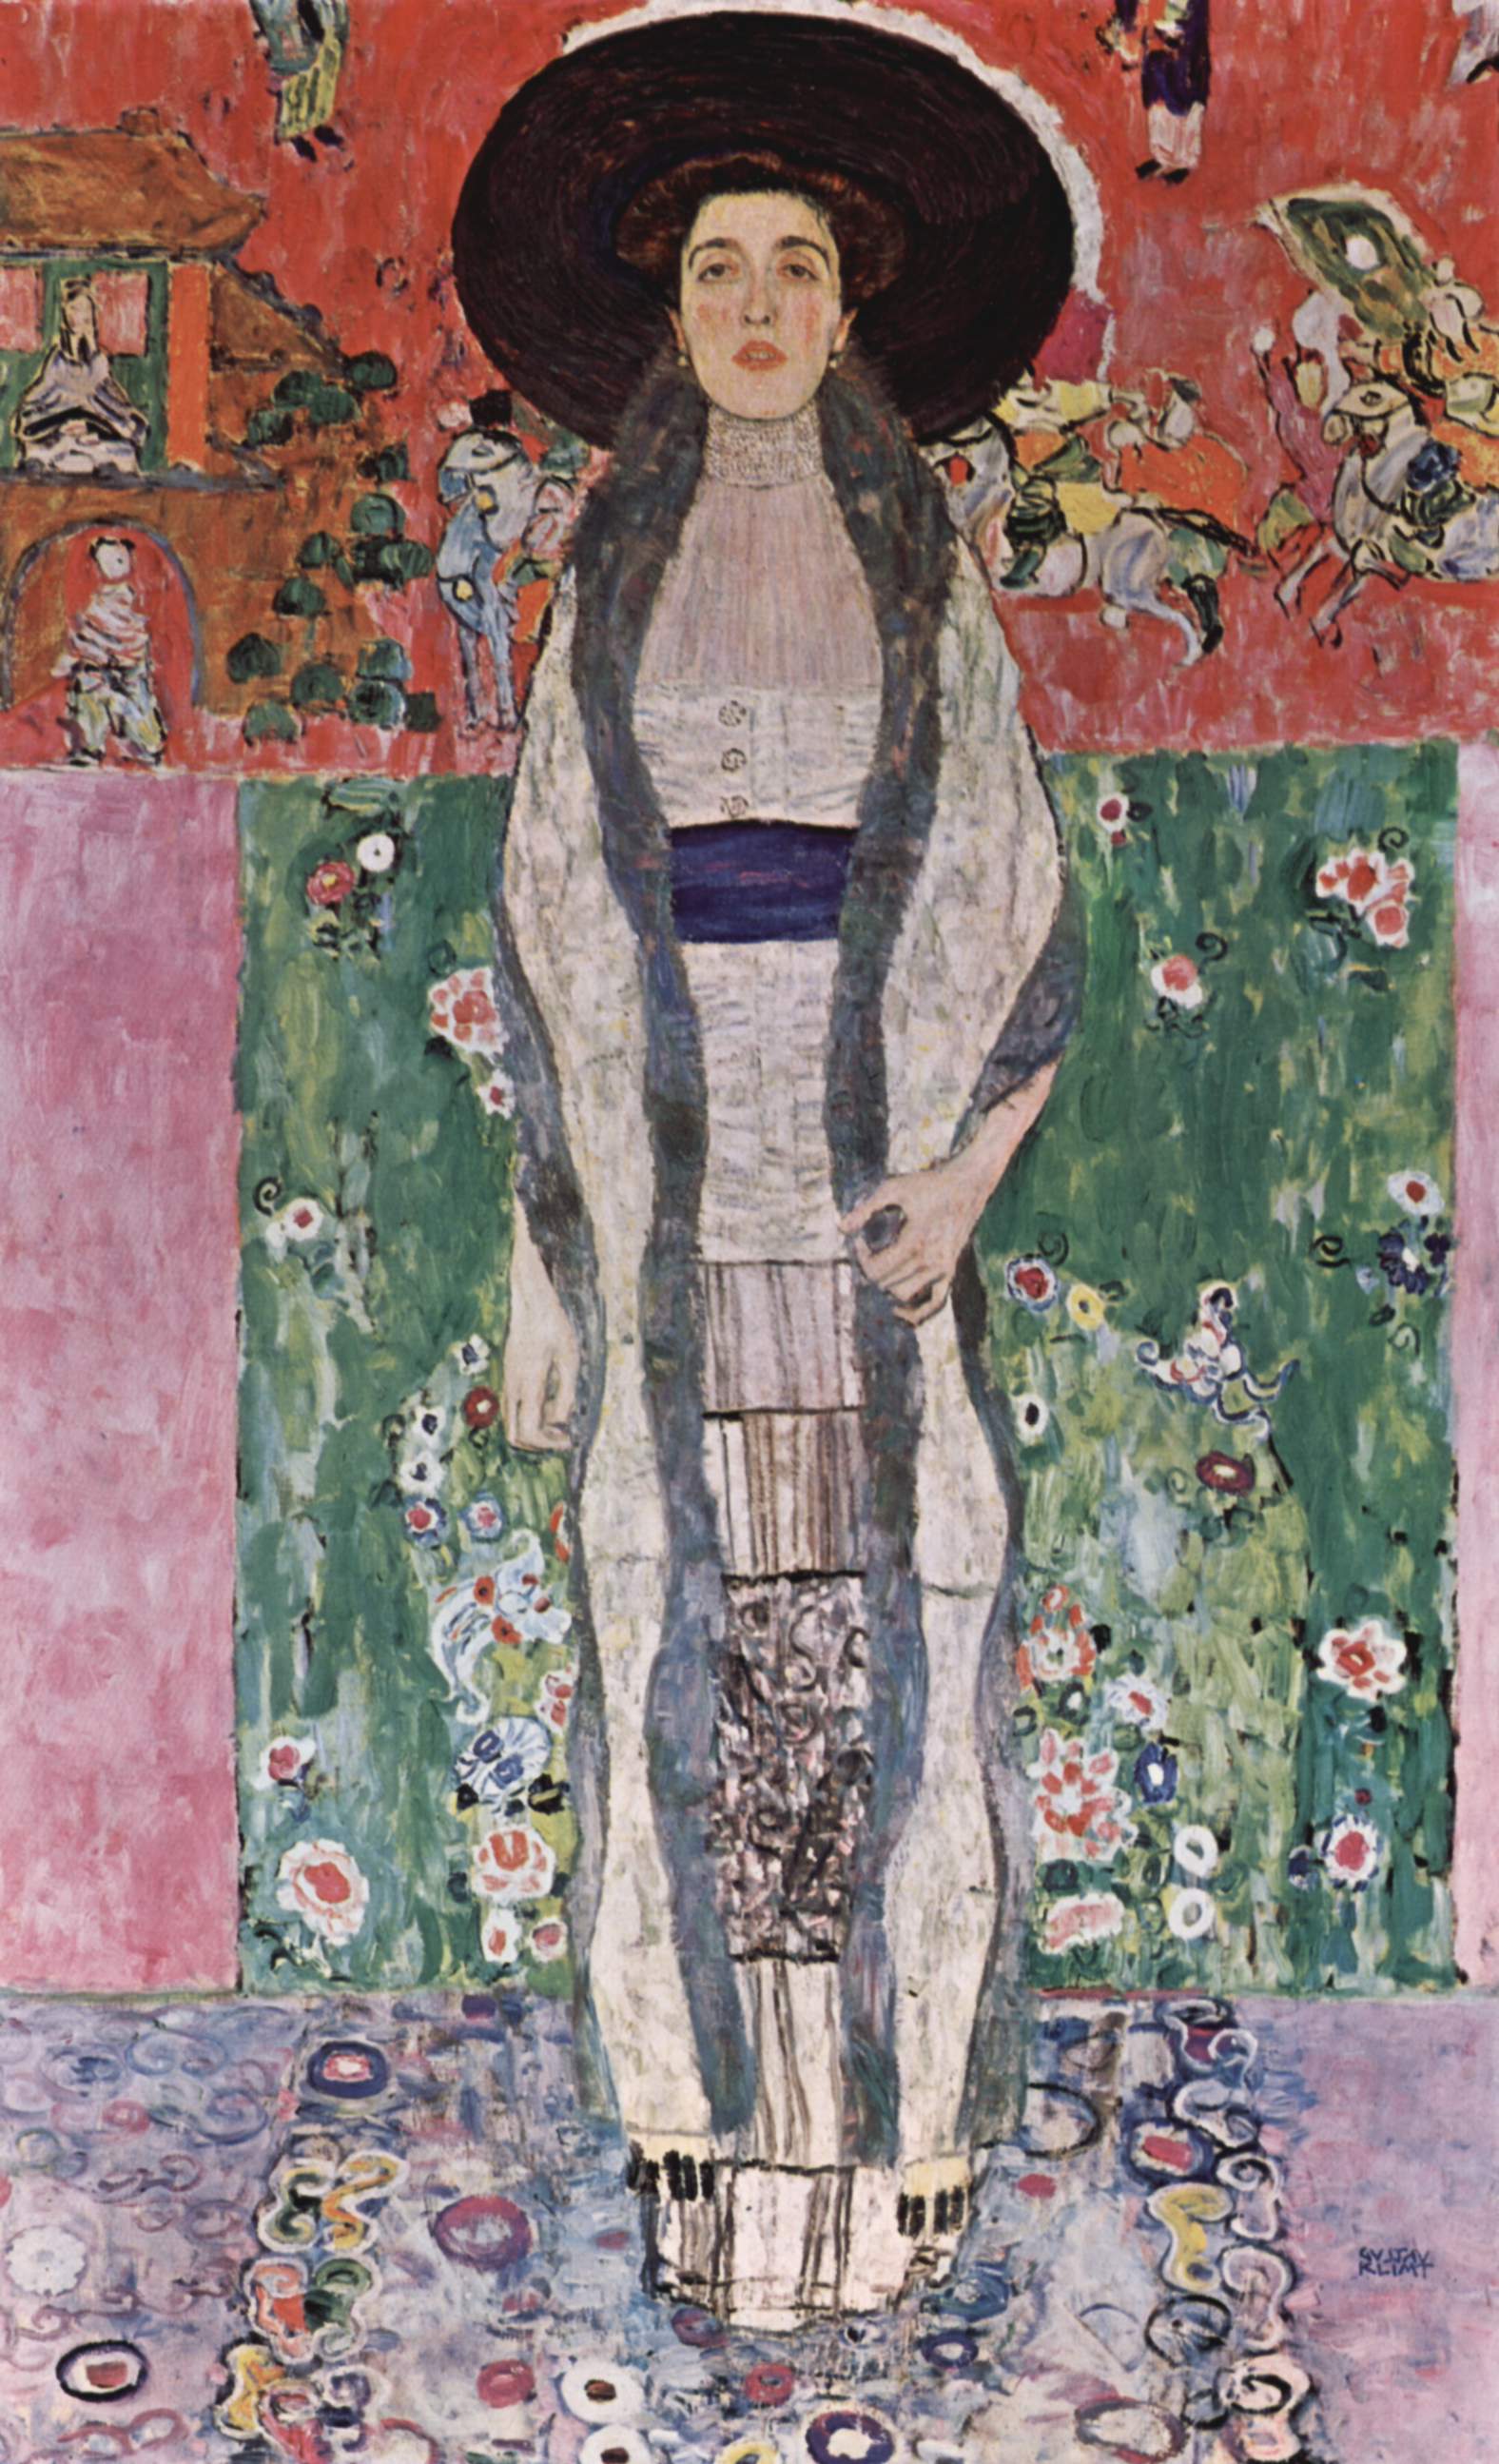 Gustav Klimt, "Adele Bloch-Bauer II", 1912